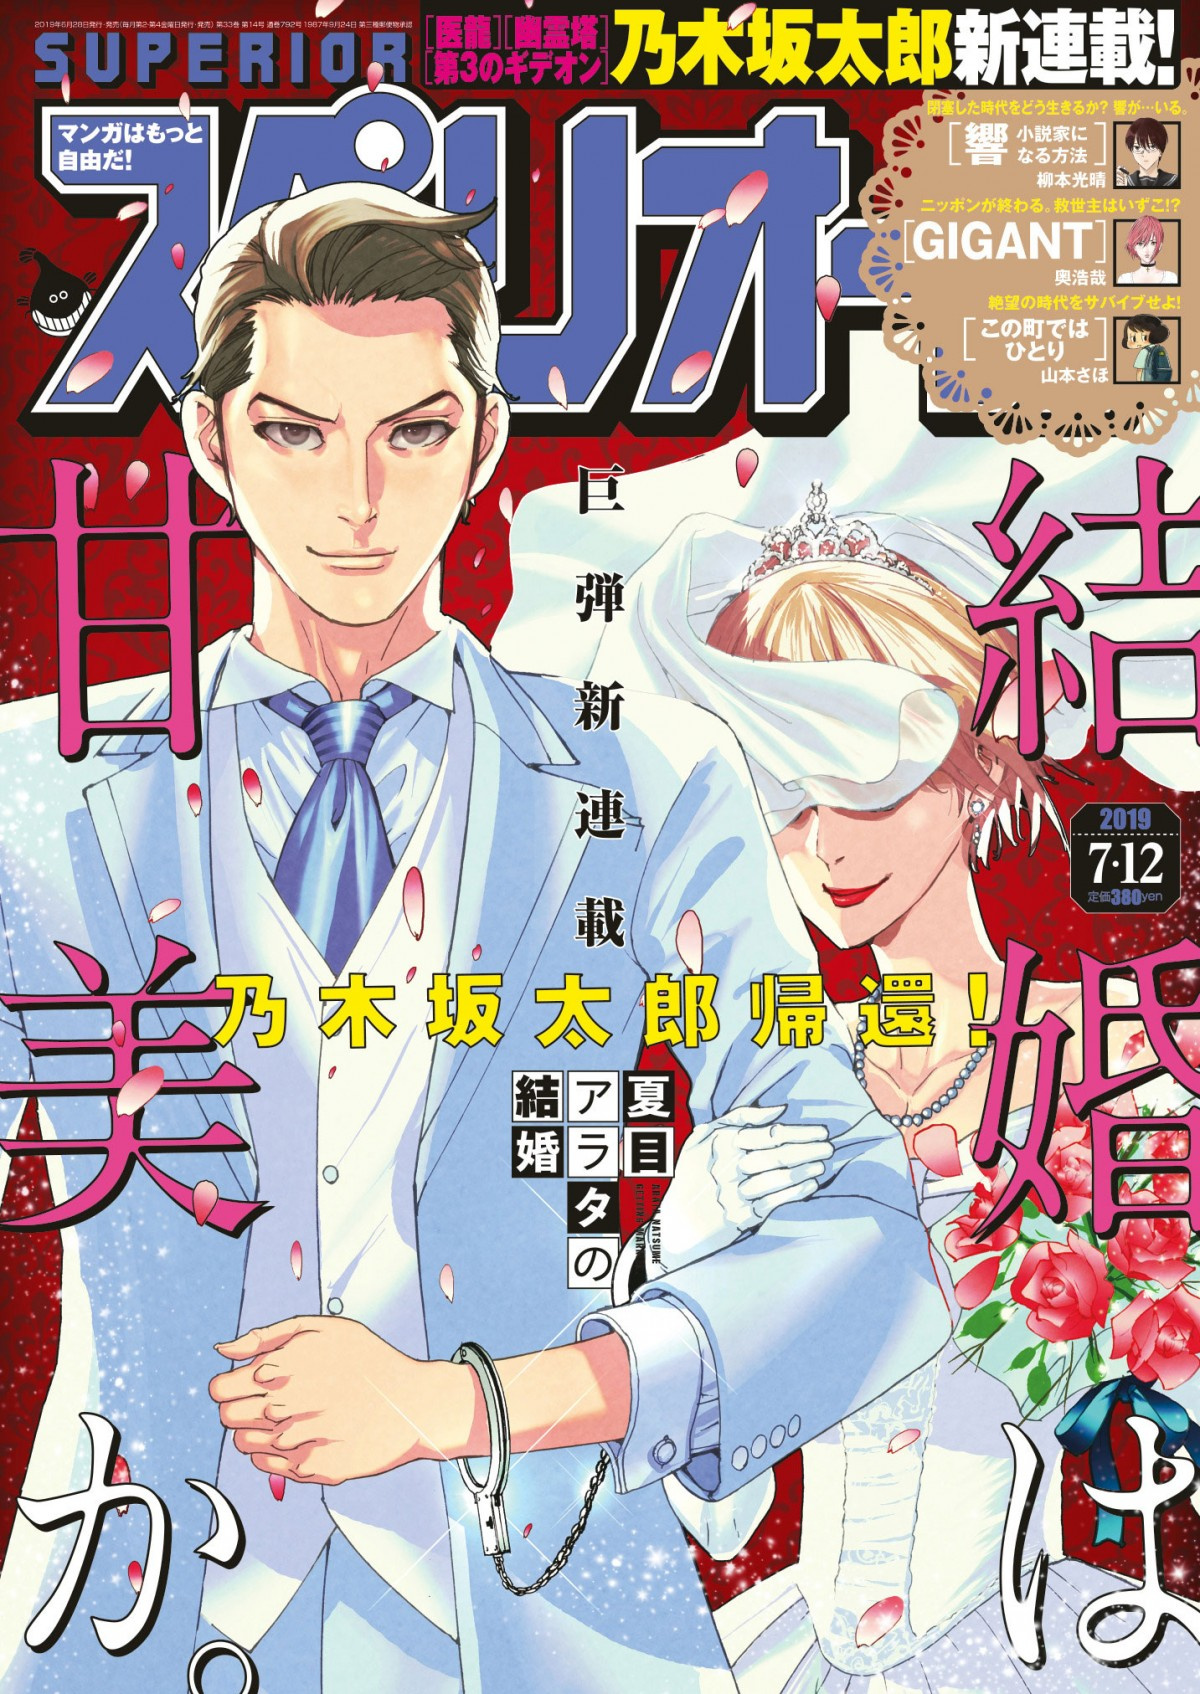 医龍 作者の新連載のテーマは 結婚 夏目アラタの結婚 スペリオールで開始 Oricon News